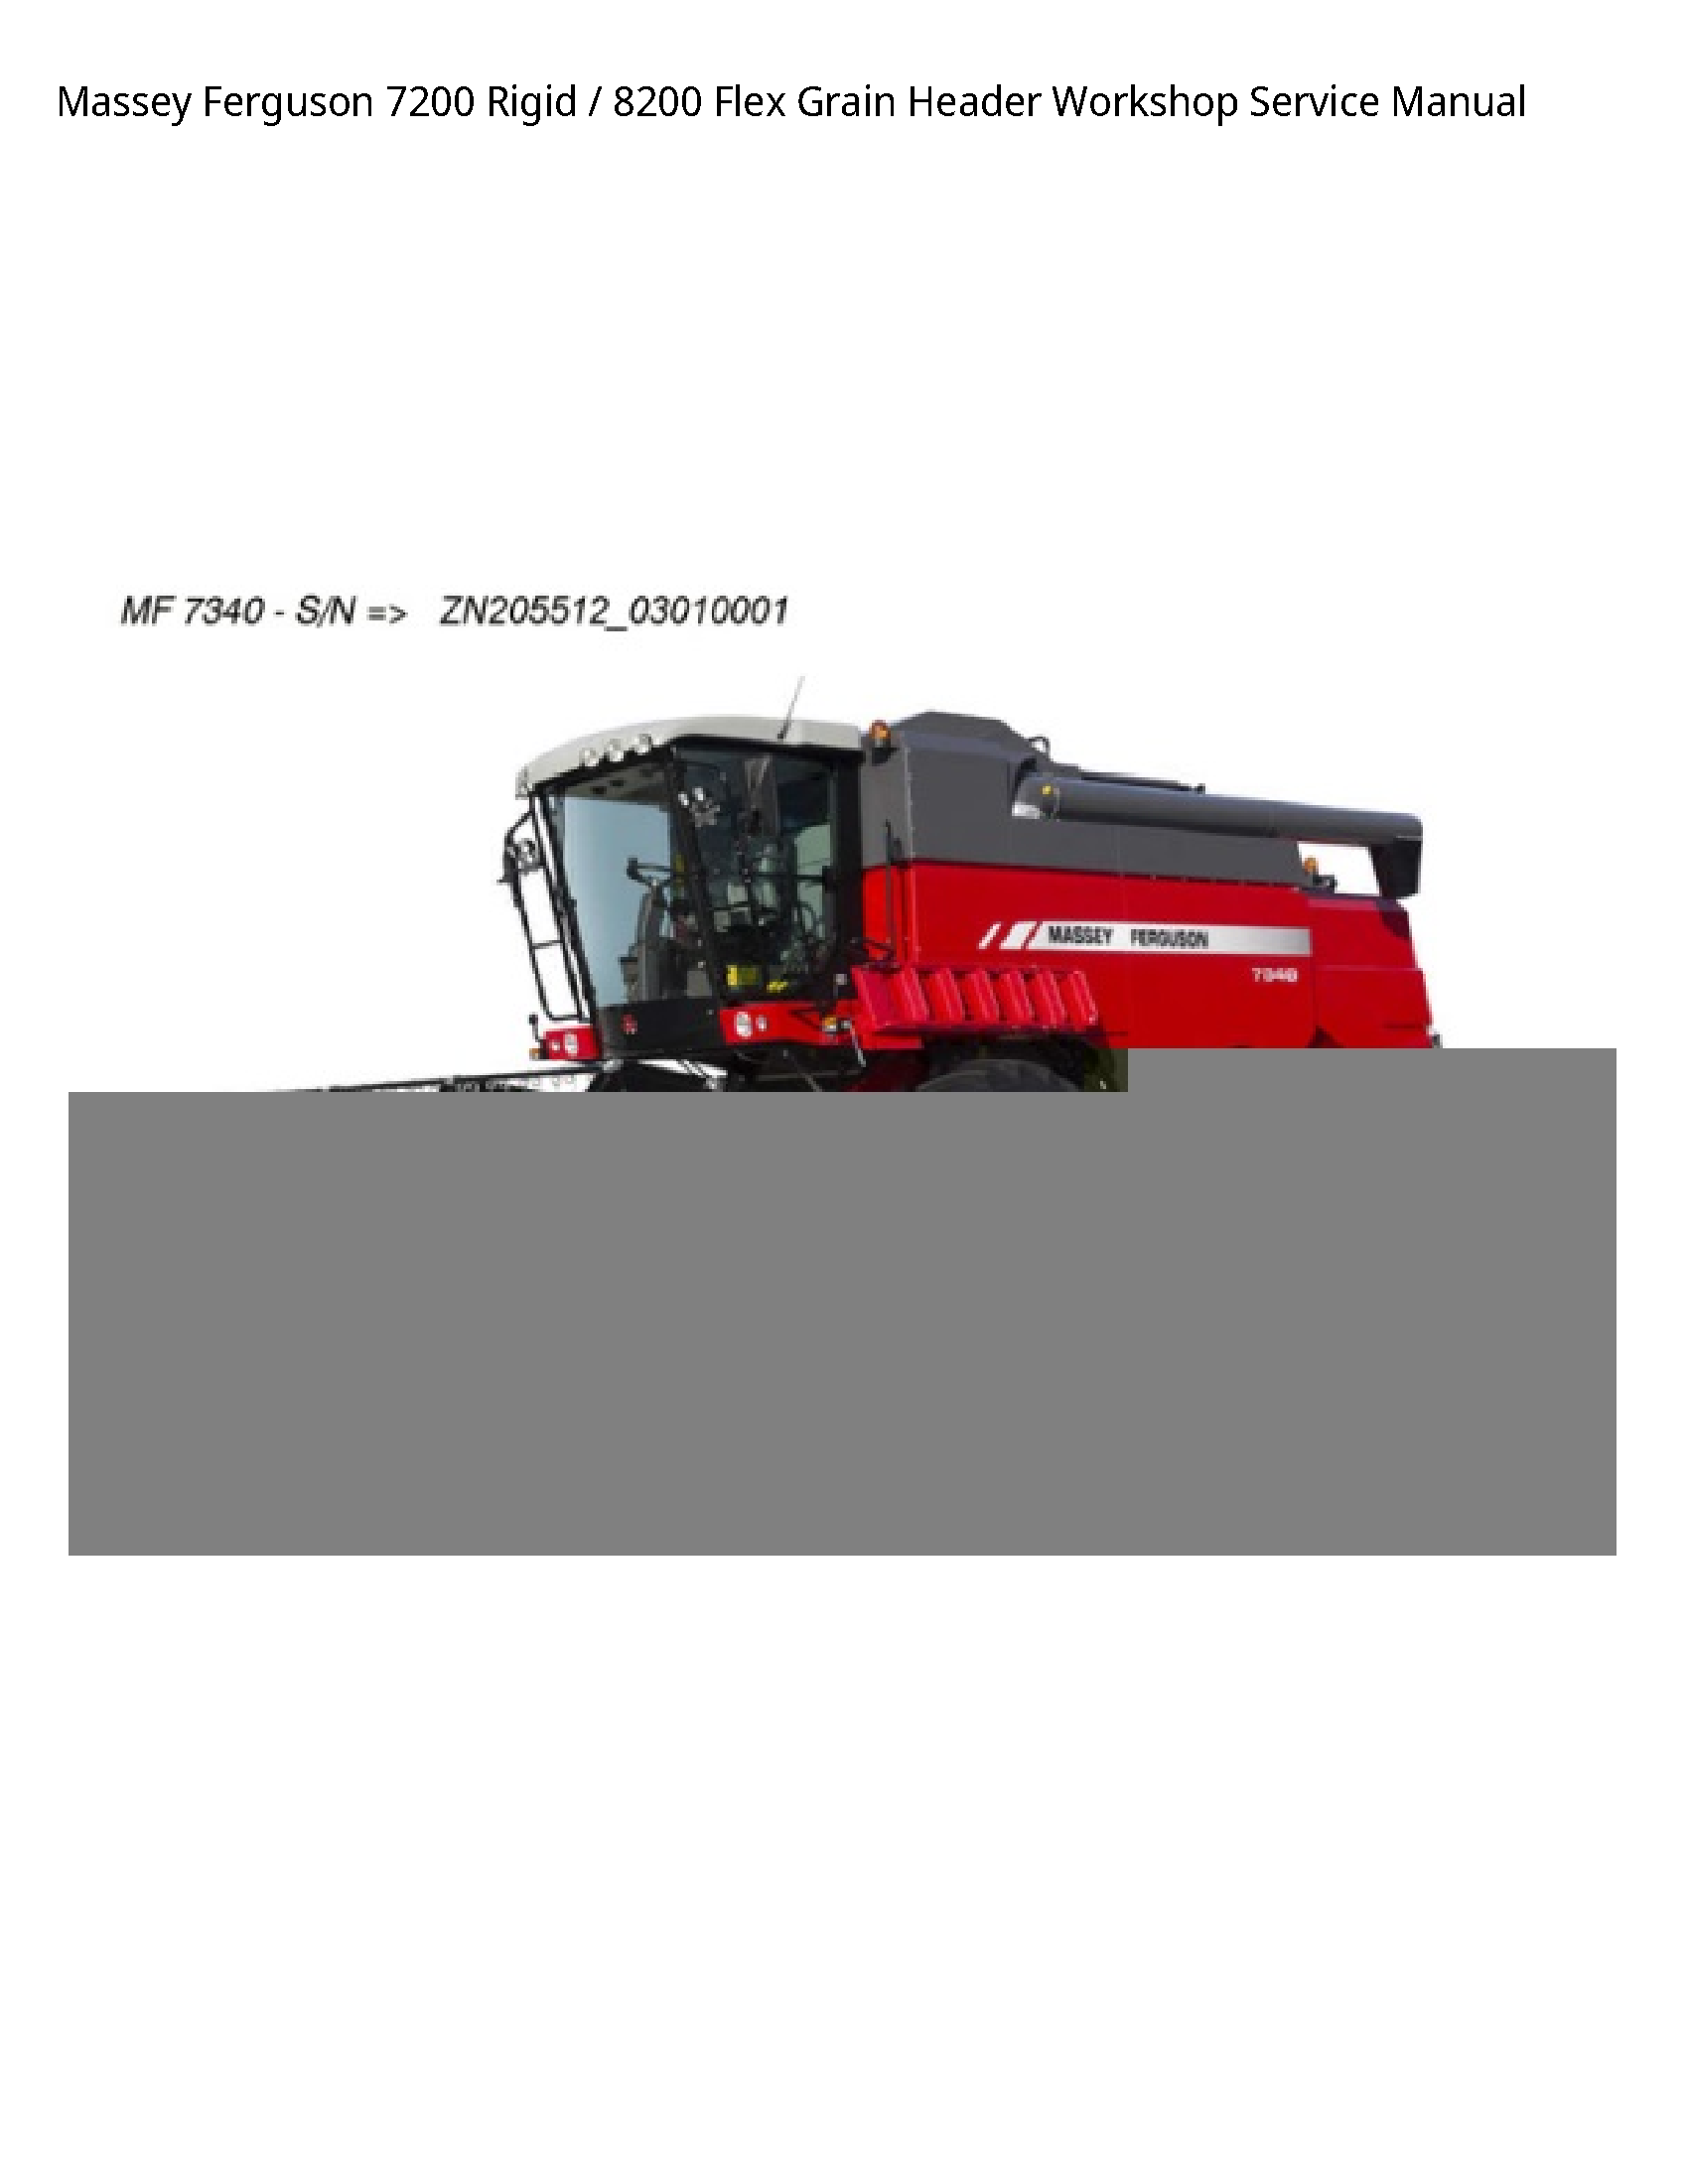 Massey Ferguson 7200 Rigid Flex Grain Header Service manual